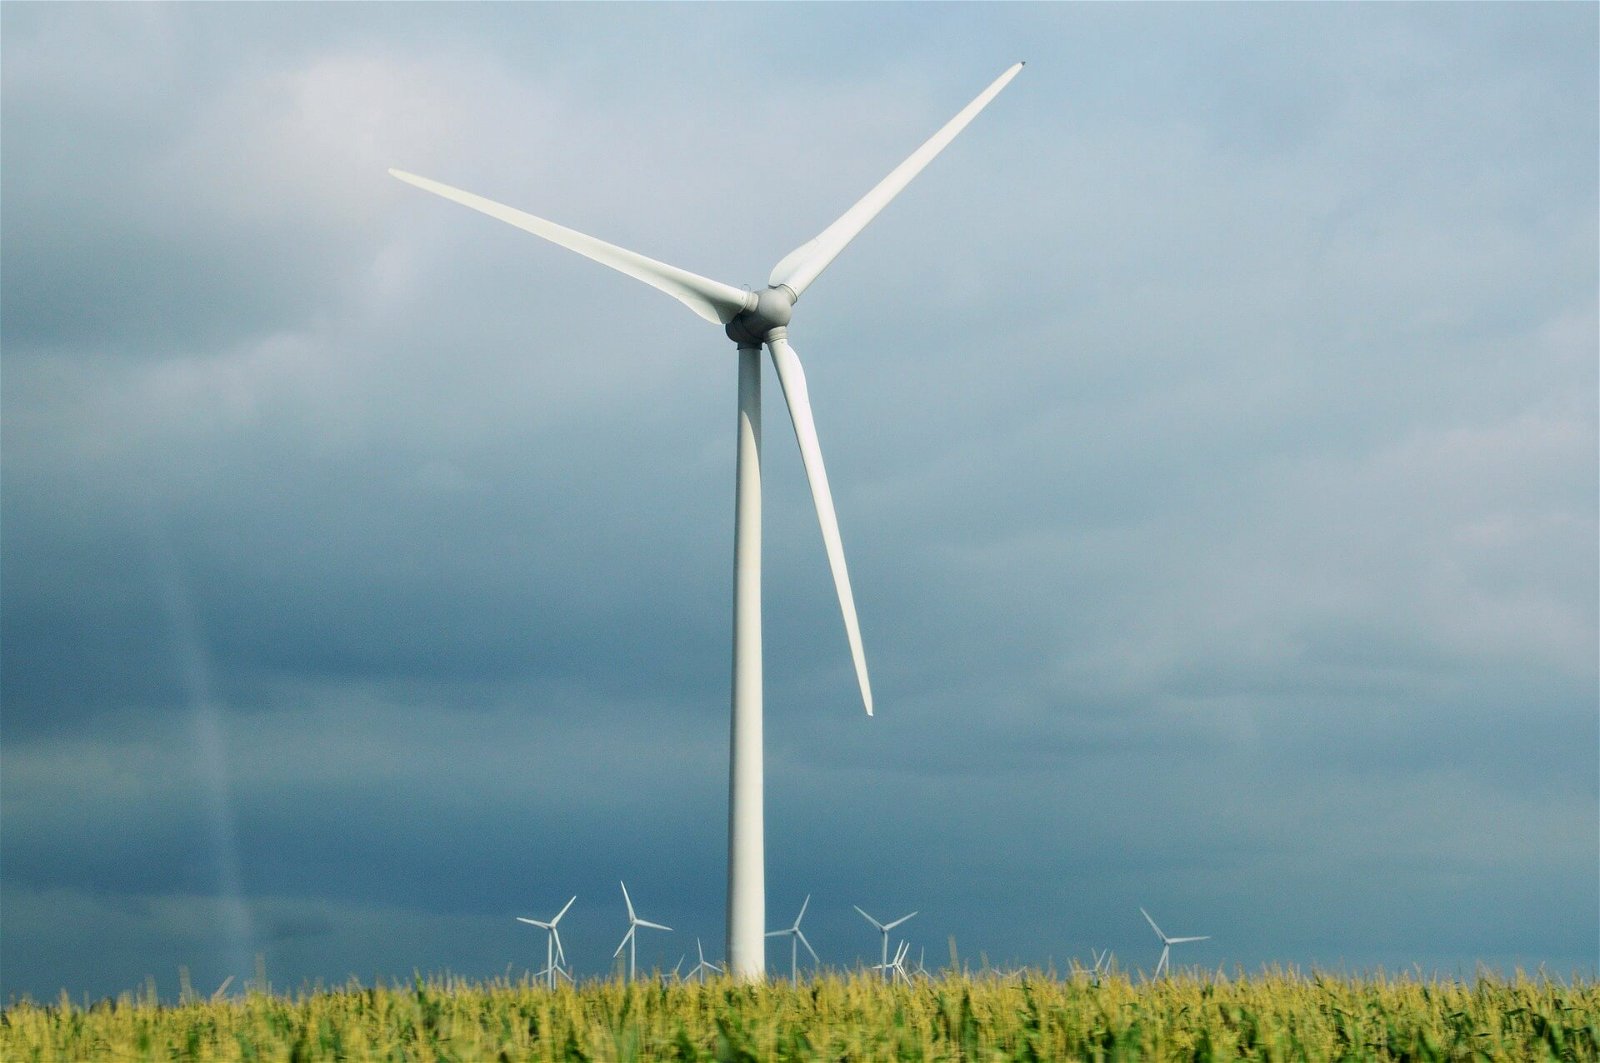 moinho de vento elétrico - geração de energia sustentável 1239311